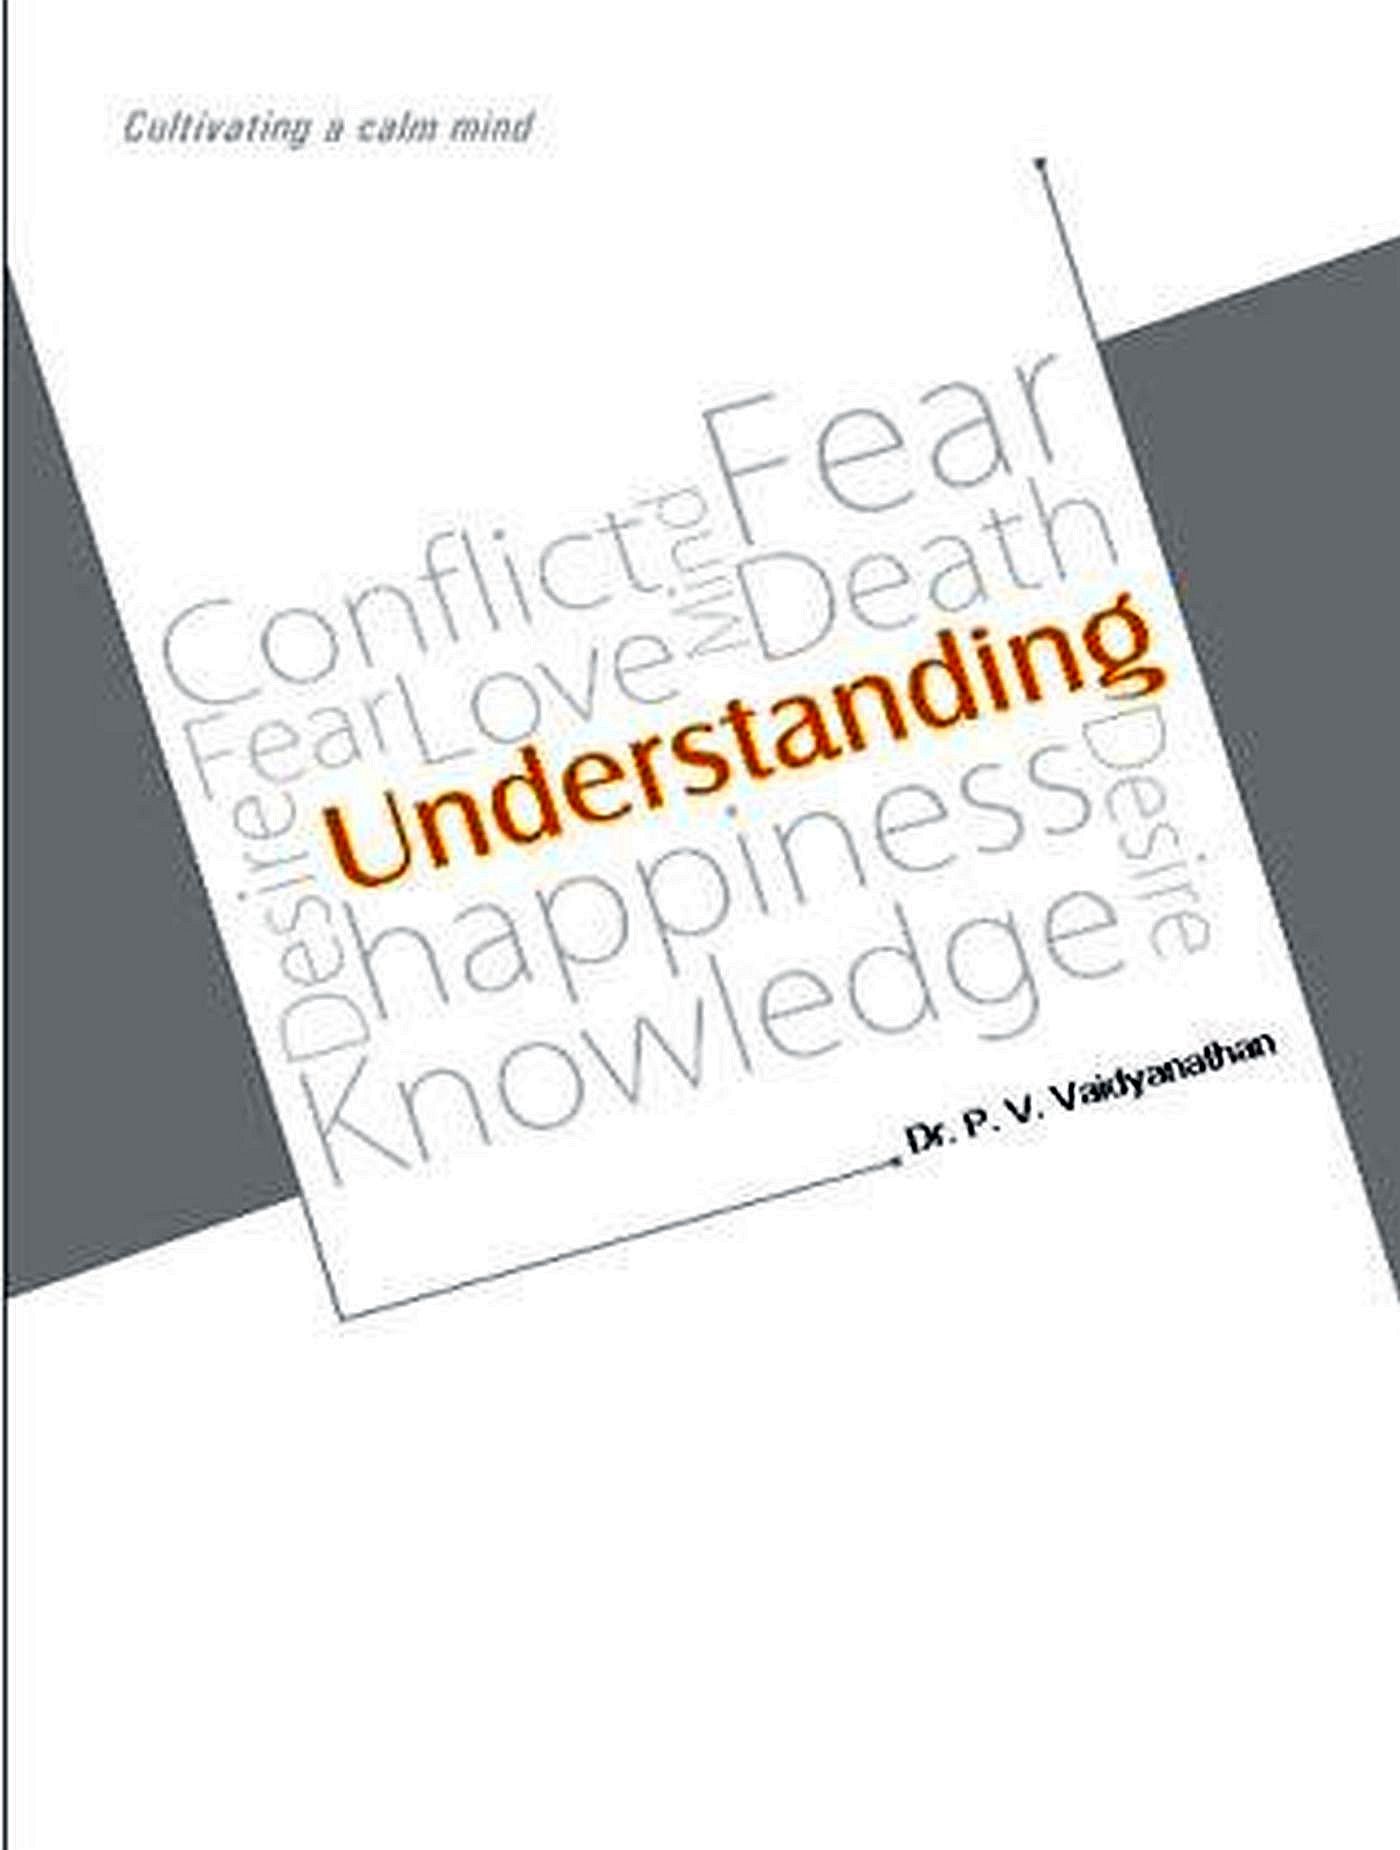 The Understanding book